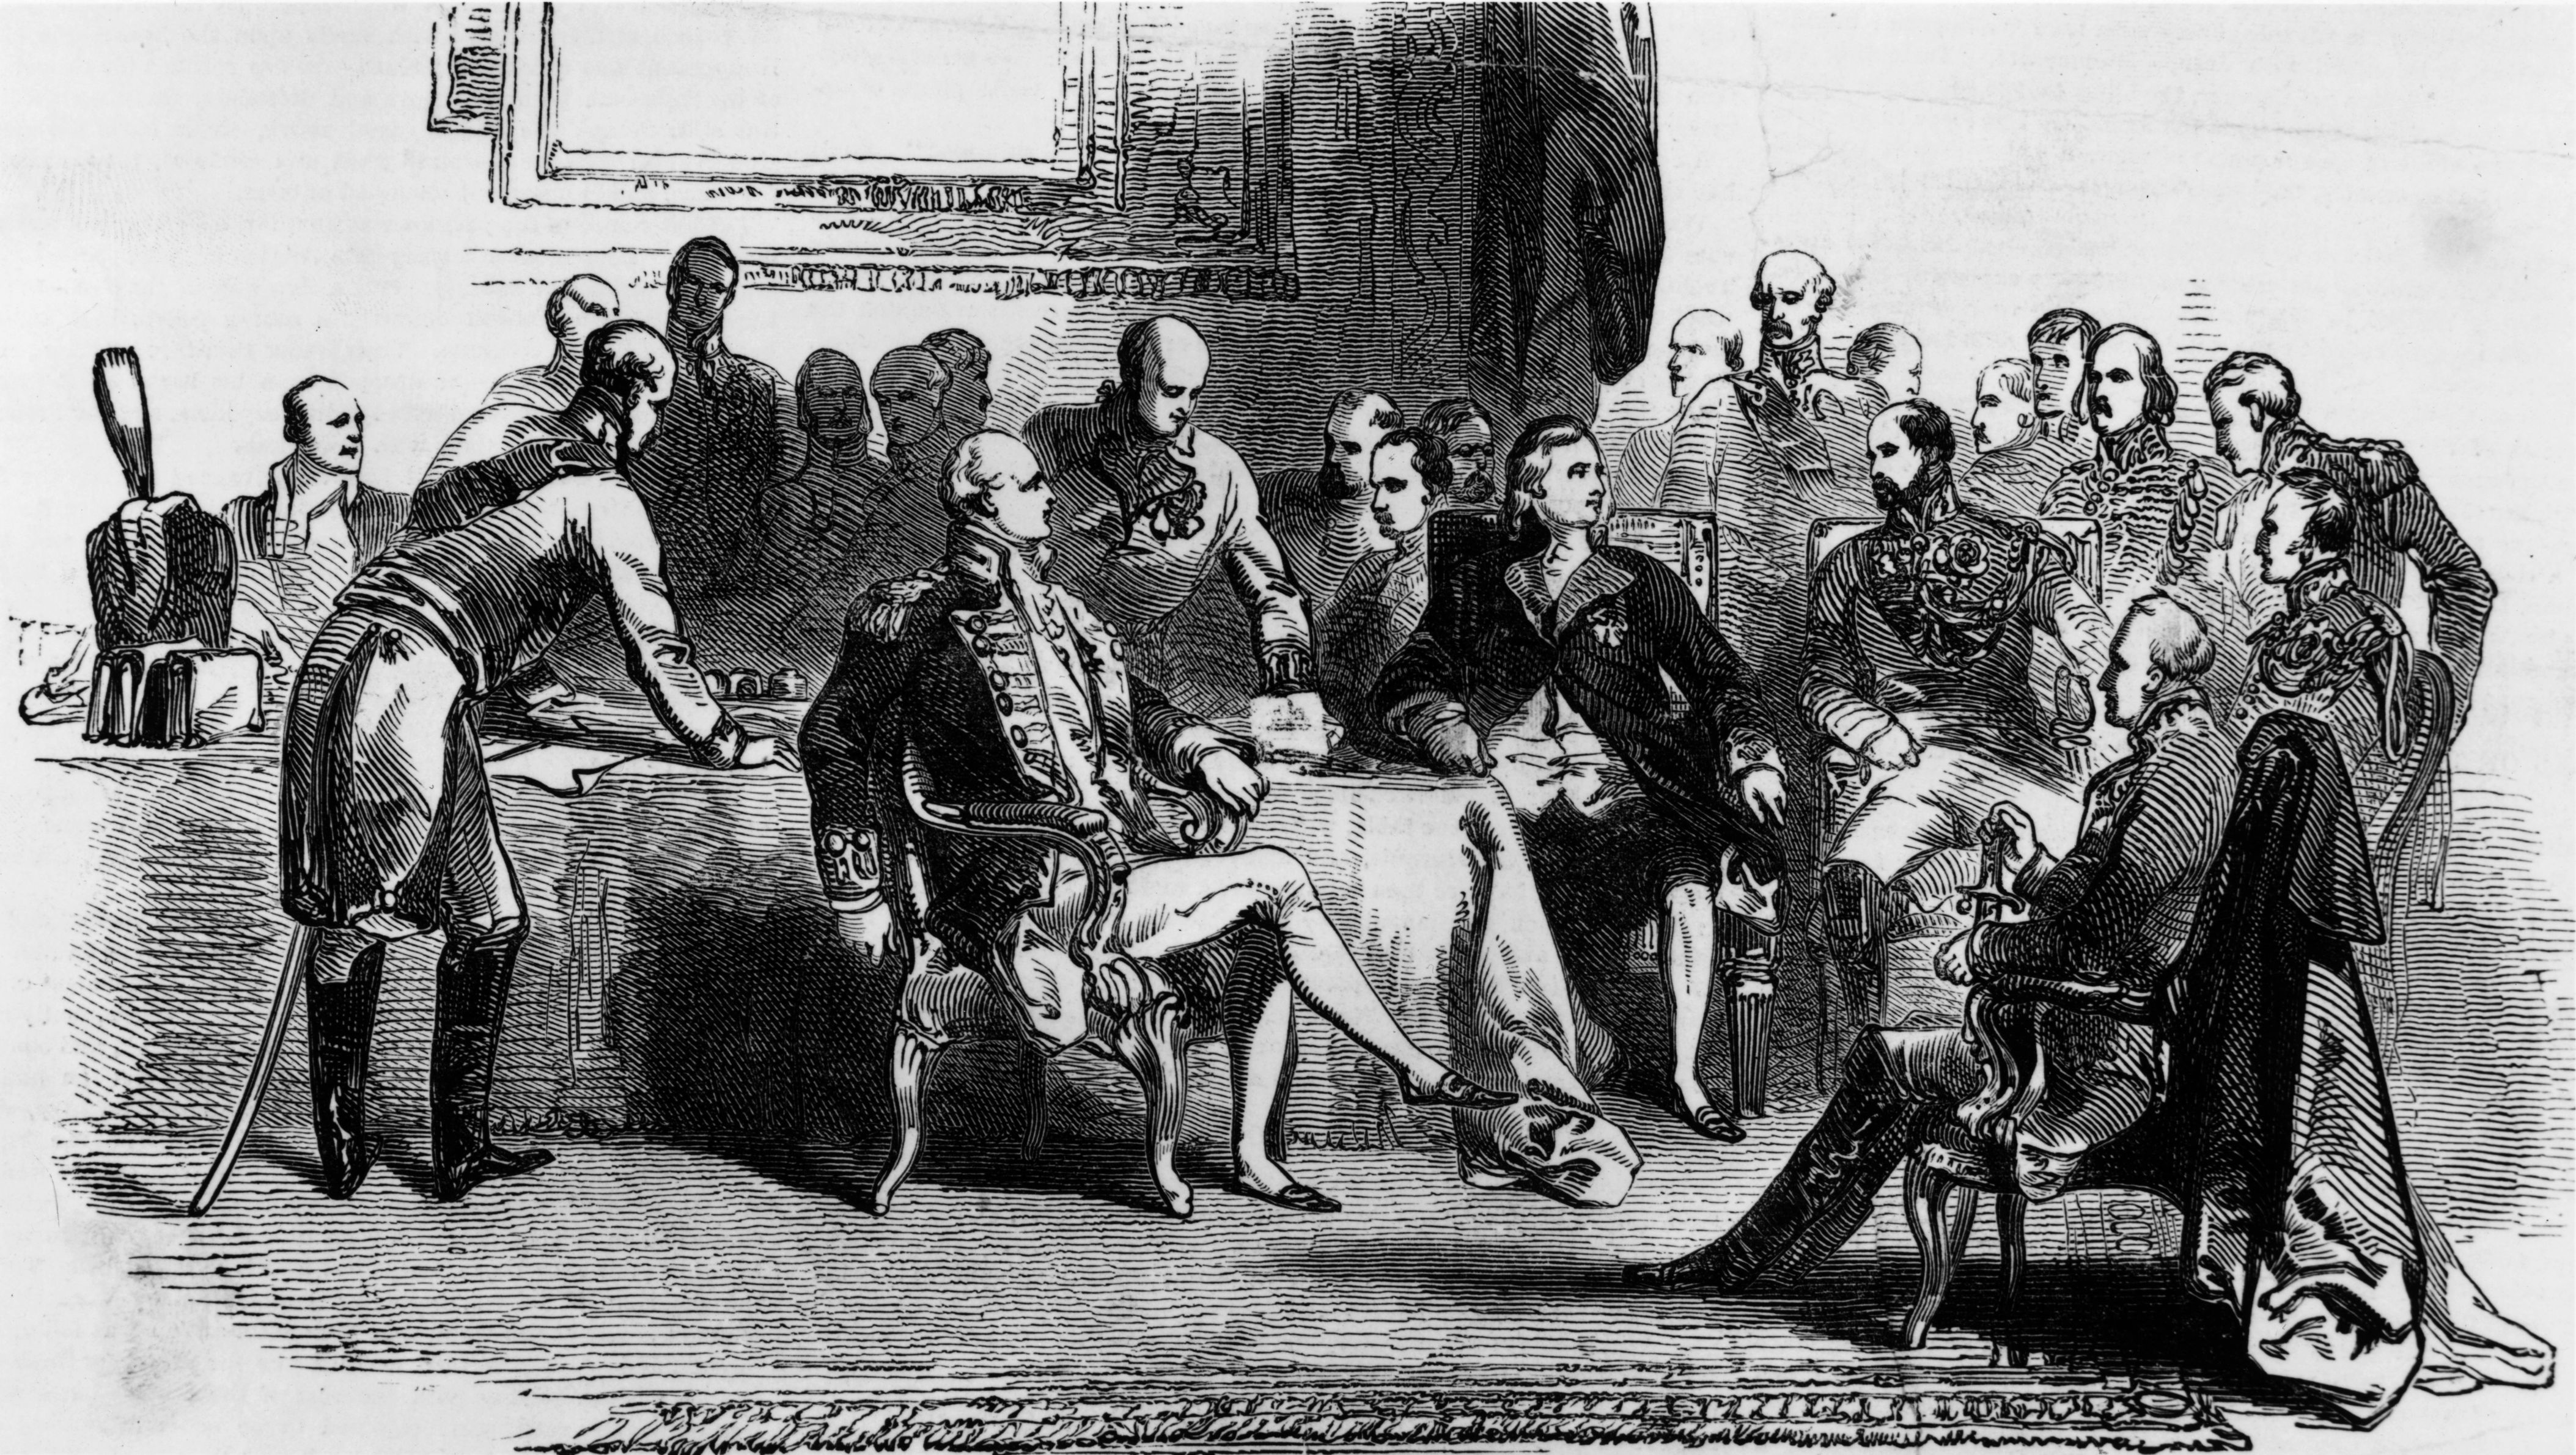 Un'altra raffigurazione del Congresso tenutosi a Vienna. Nel settembre 1815 per rinsaldare l’ordine ratificato, viene creata la Santa Alleanza tra Austria, Prussia e Russia